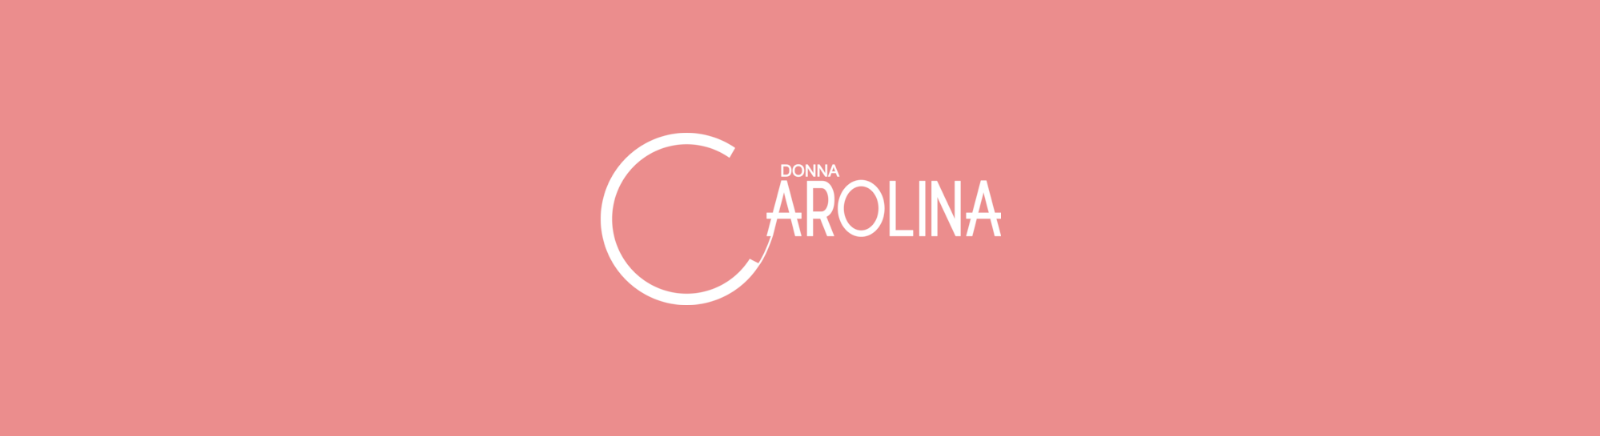 Juppen: Donna Carolina Schnürschuhe für Damen online shoppen